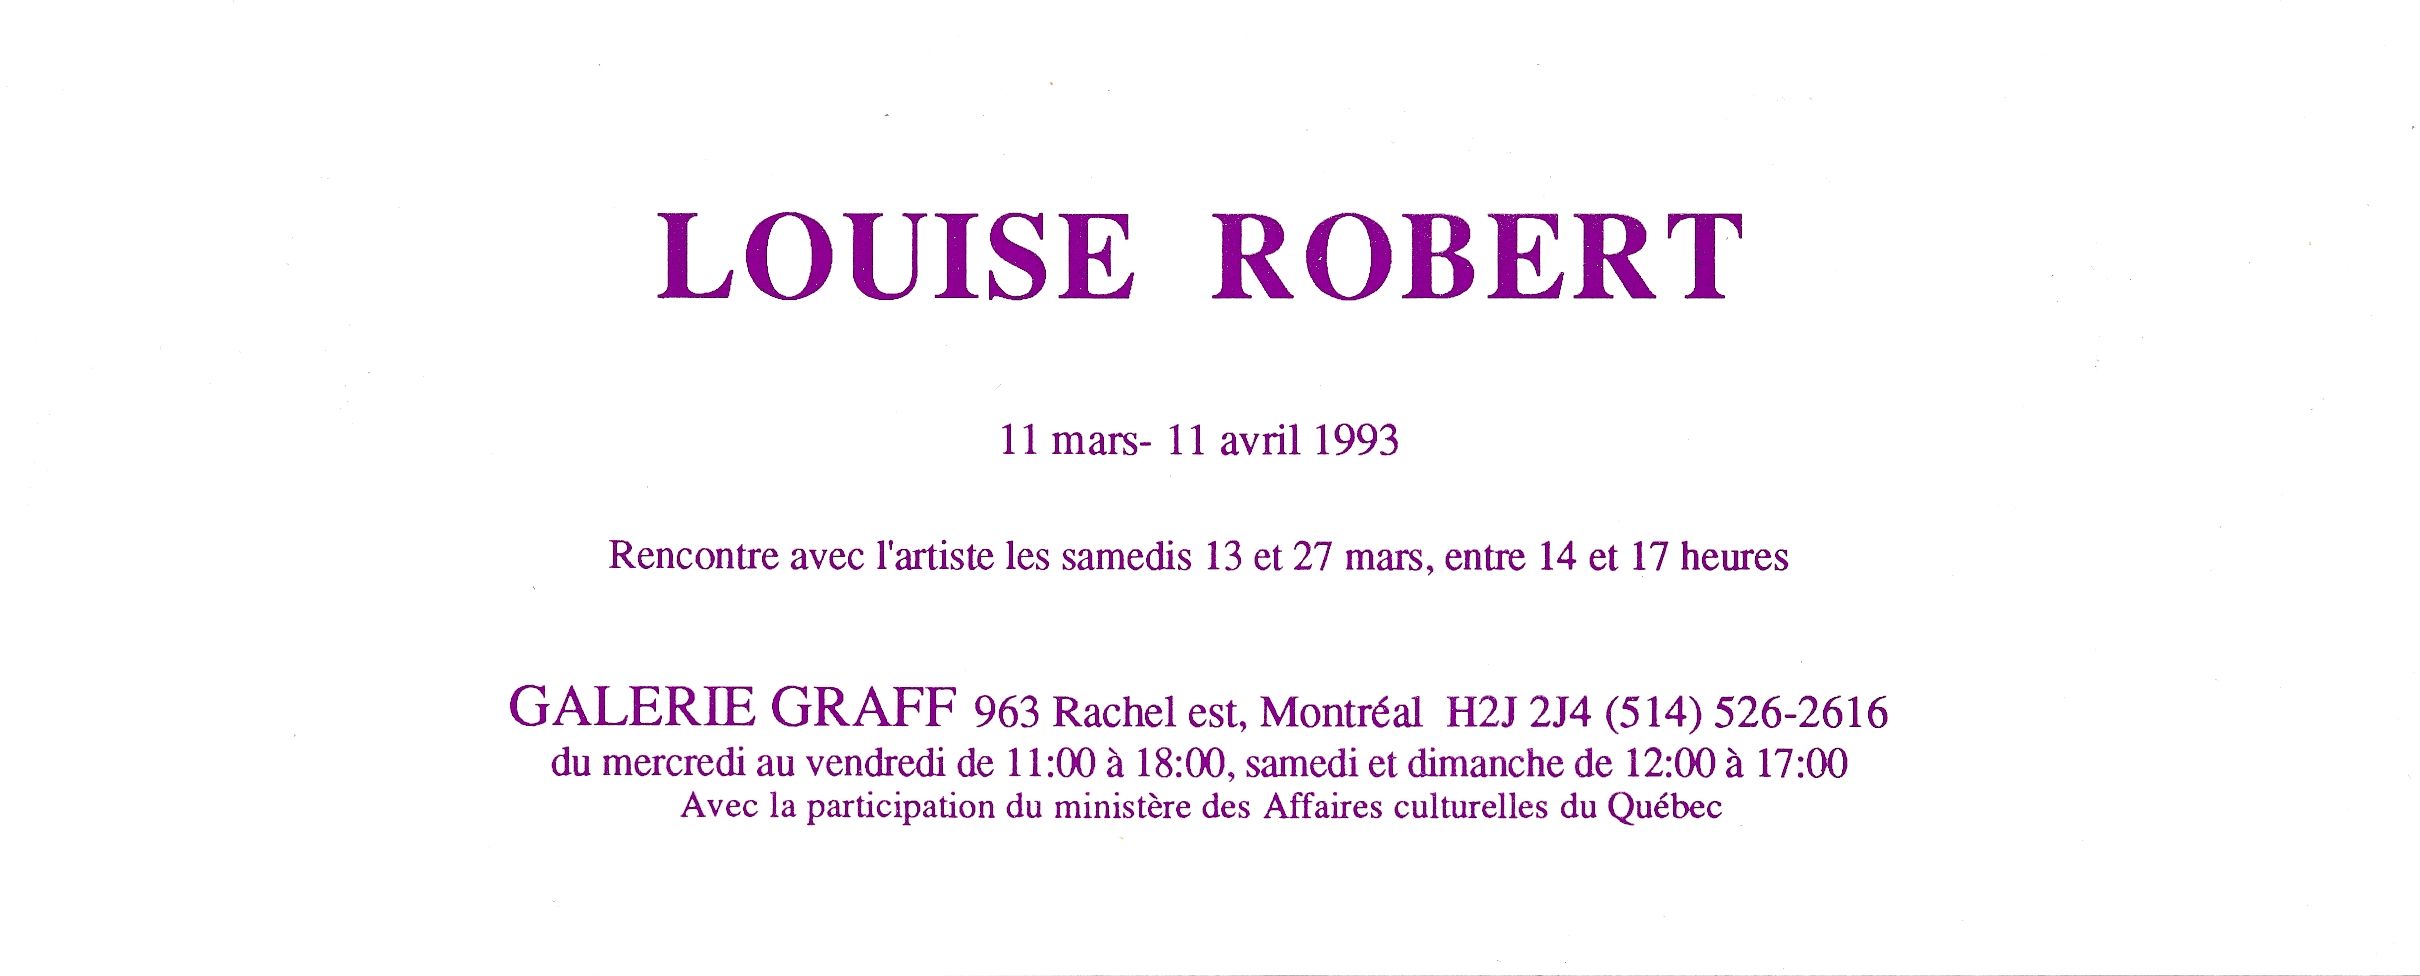 Carton d’invitation de l’exposition Louise Robert, Galerie Graff, Montréal. 1993.